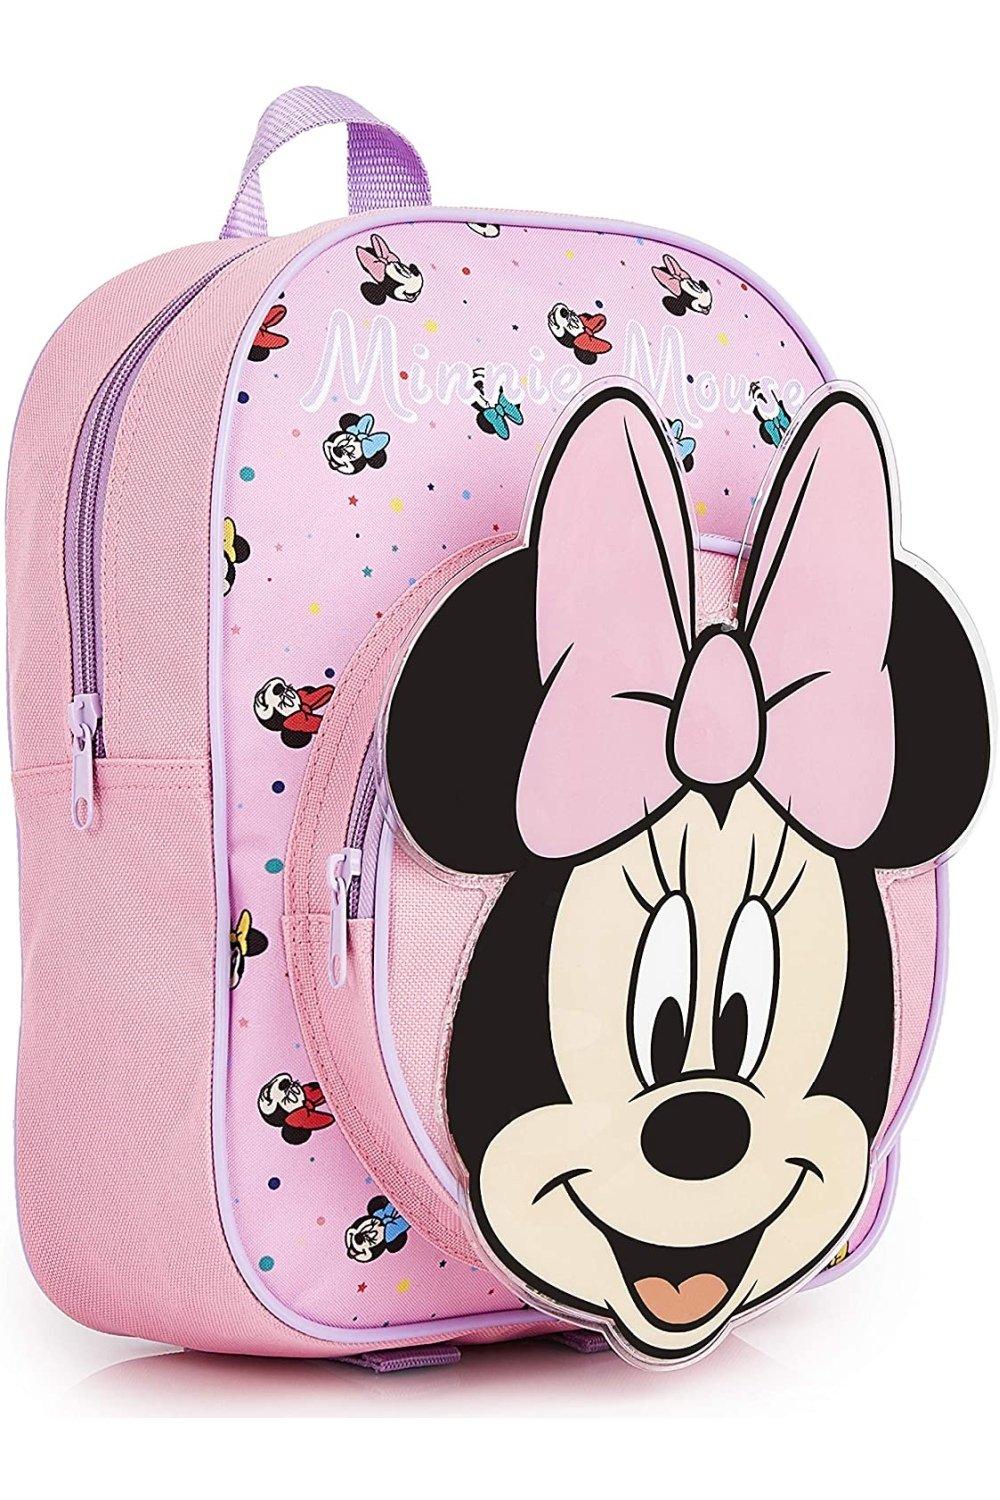 Школьная сумка Минни Маус Disney, розовый детские плюшевые рюкзаки vaschy с 3d рисунком из мультфильма детский рюкзак для малышей школьная сумка для детского сада рюкзак для девочек и